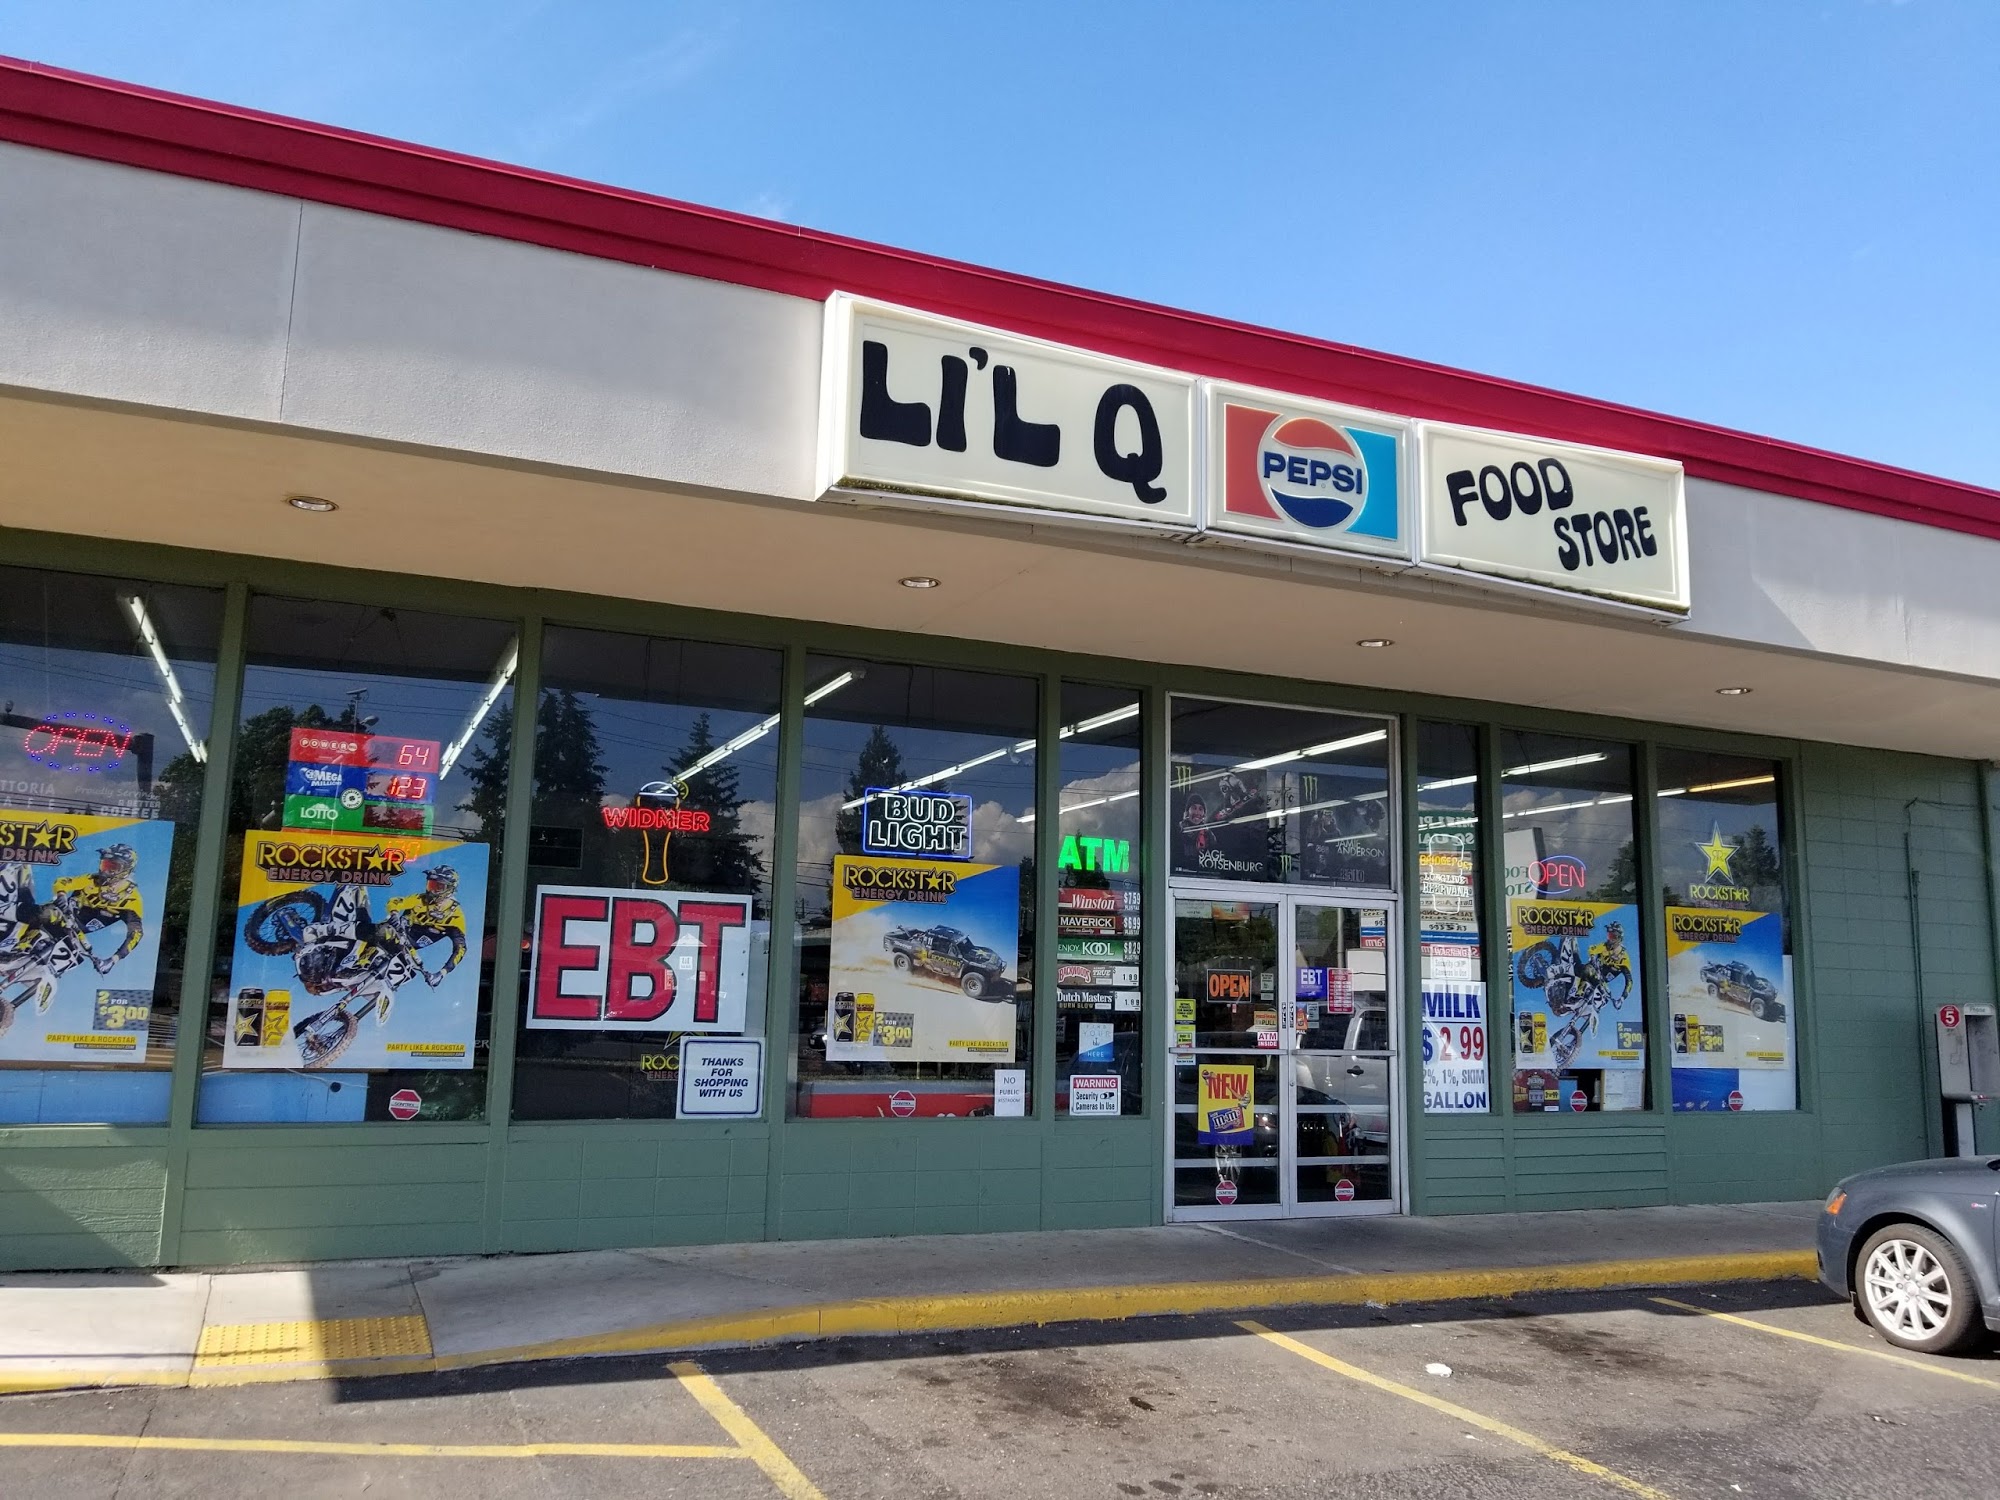 Lil Q Food Store